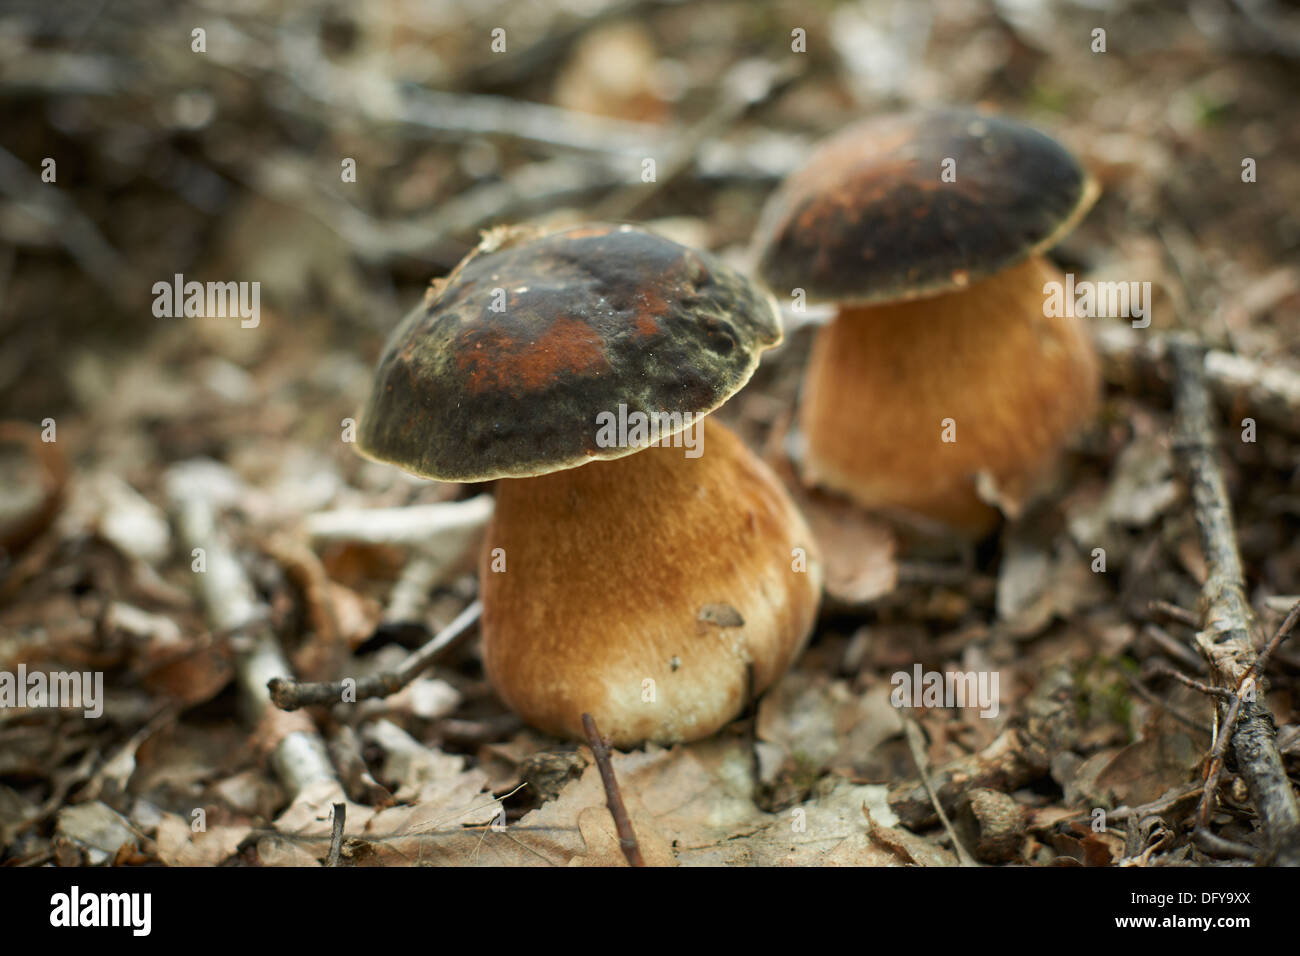 Foresta di funghi commestibili, funghi porcini, Boletus edulis Foto Stock